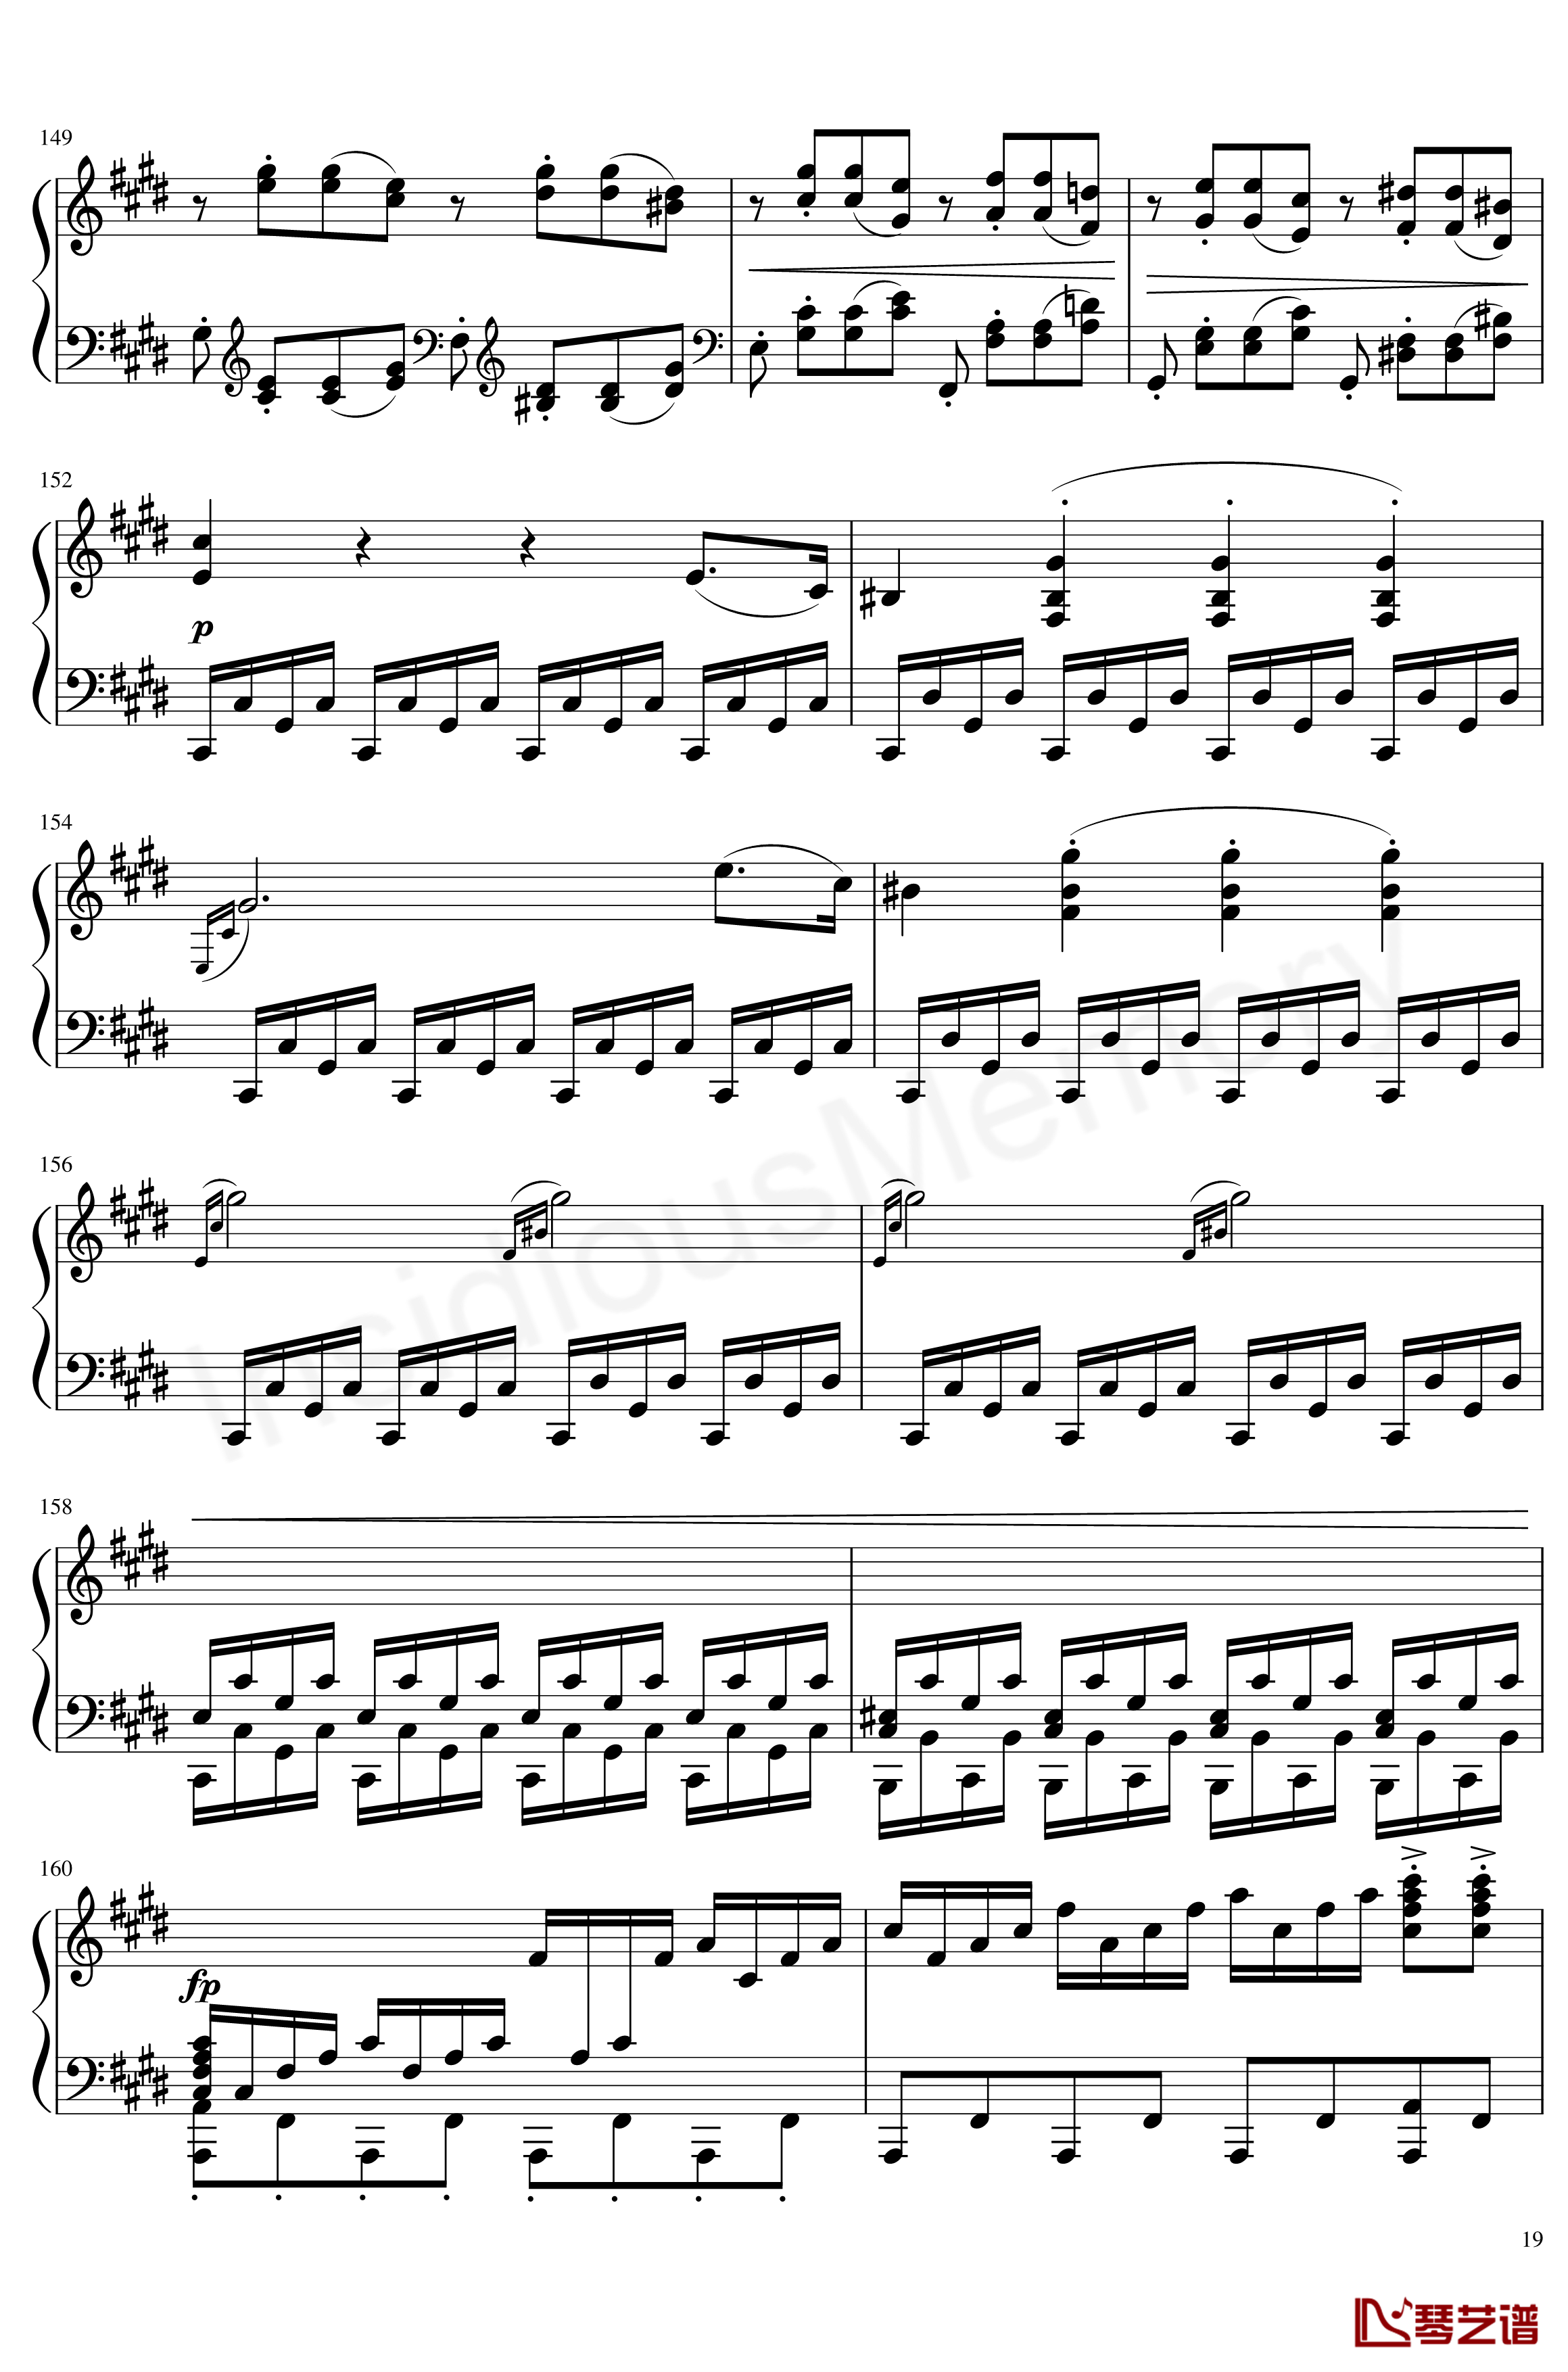 月光奏鸣曲钢琴谱-贝多芬-beethoven19